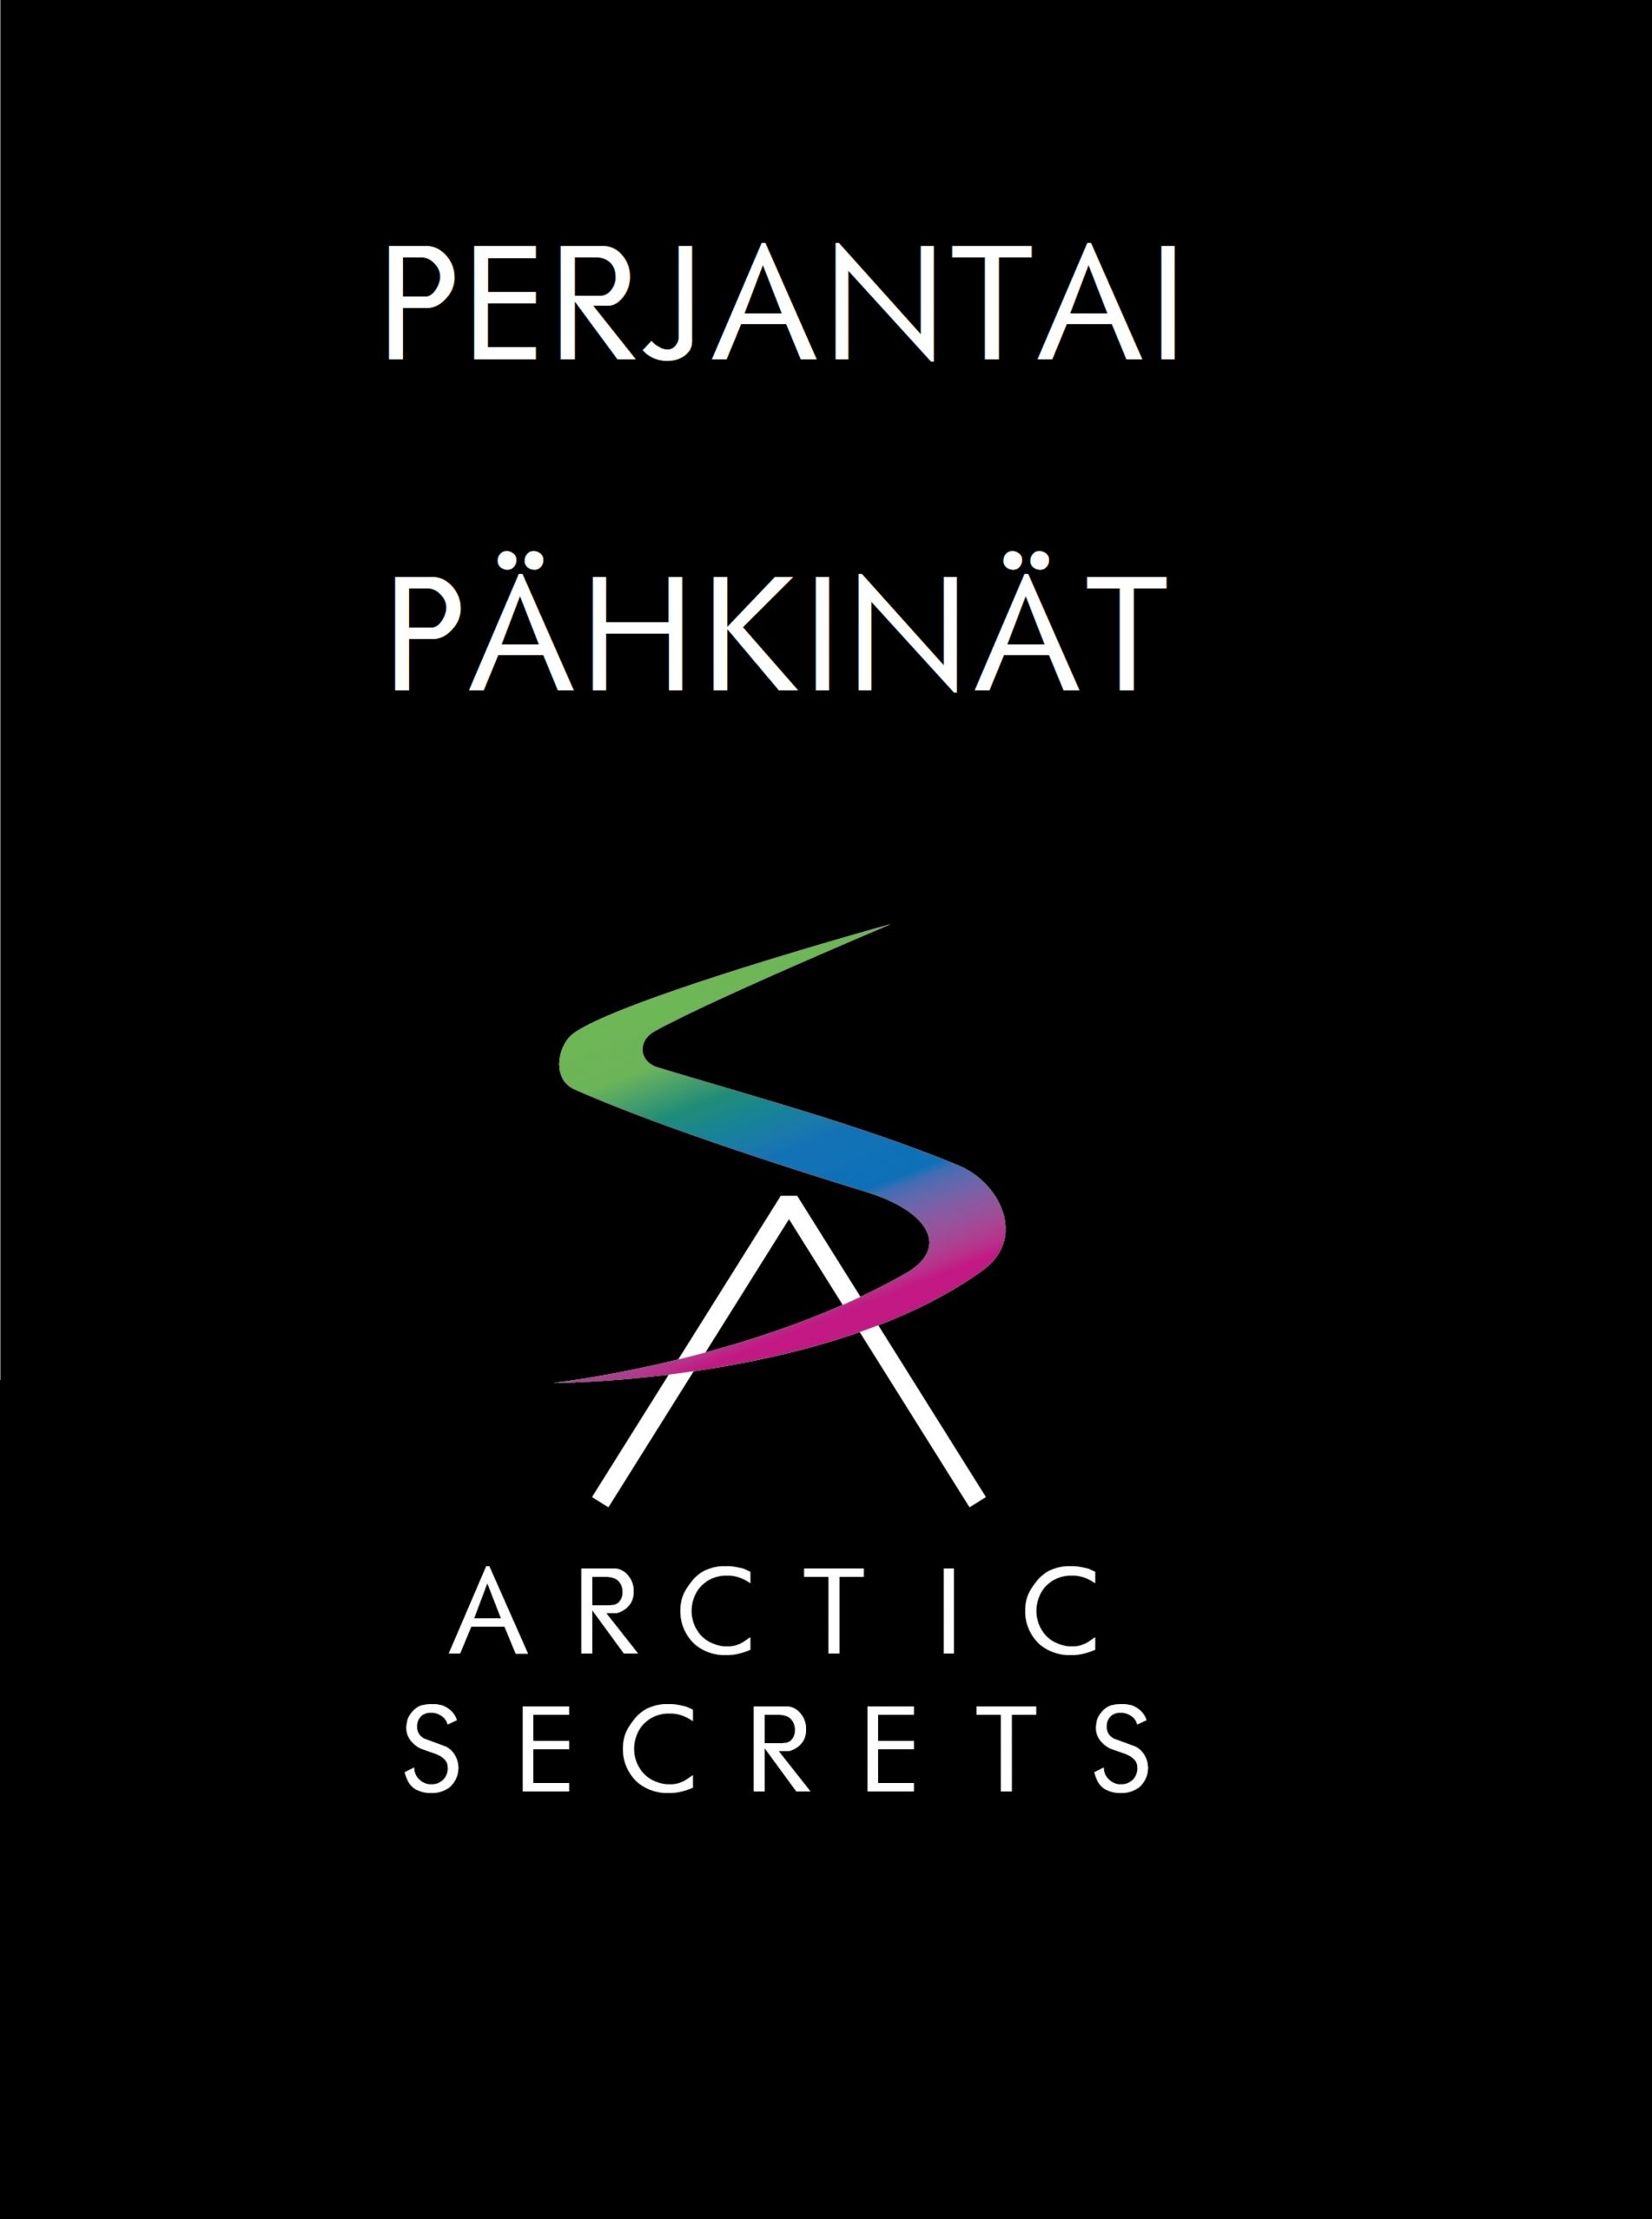 Arctic Secrets perjantaipähkinät